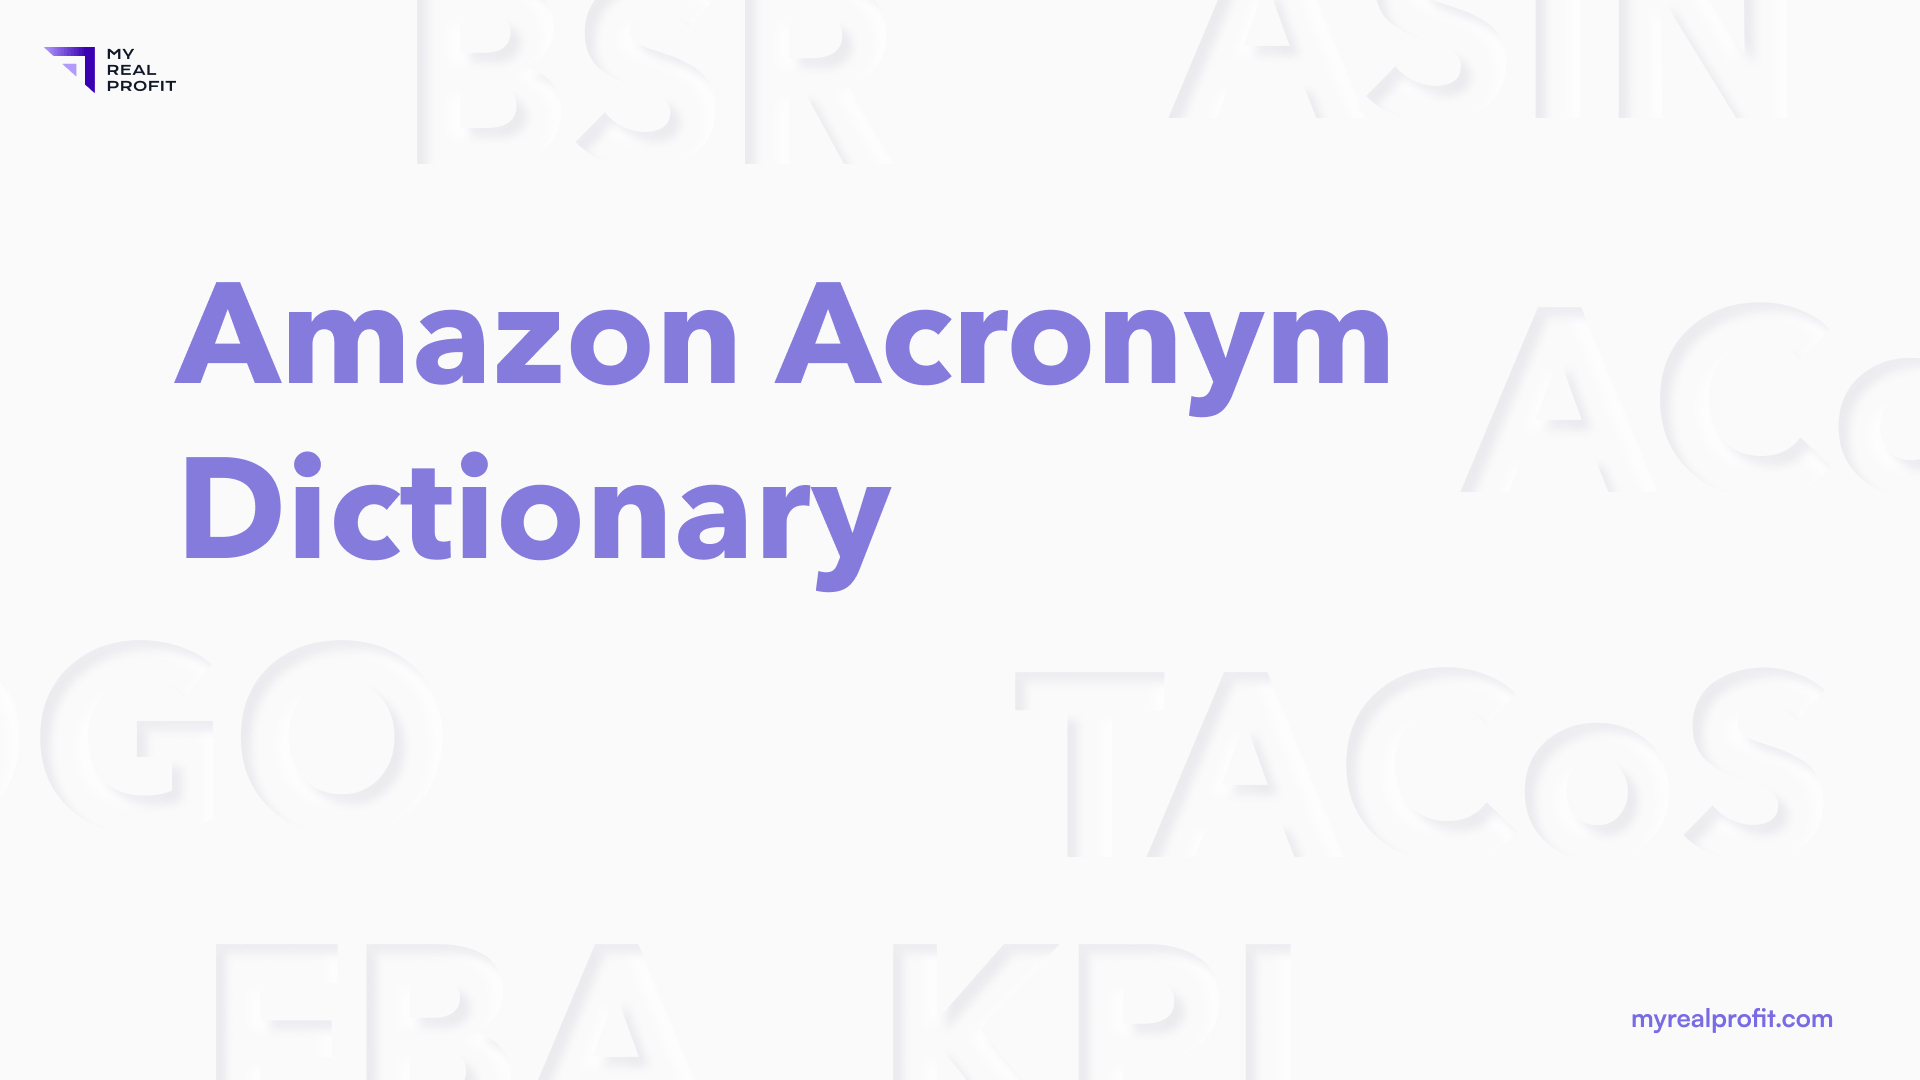 Amazon Acronym Dictionary